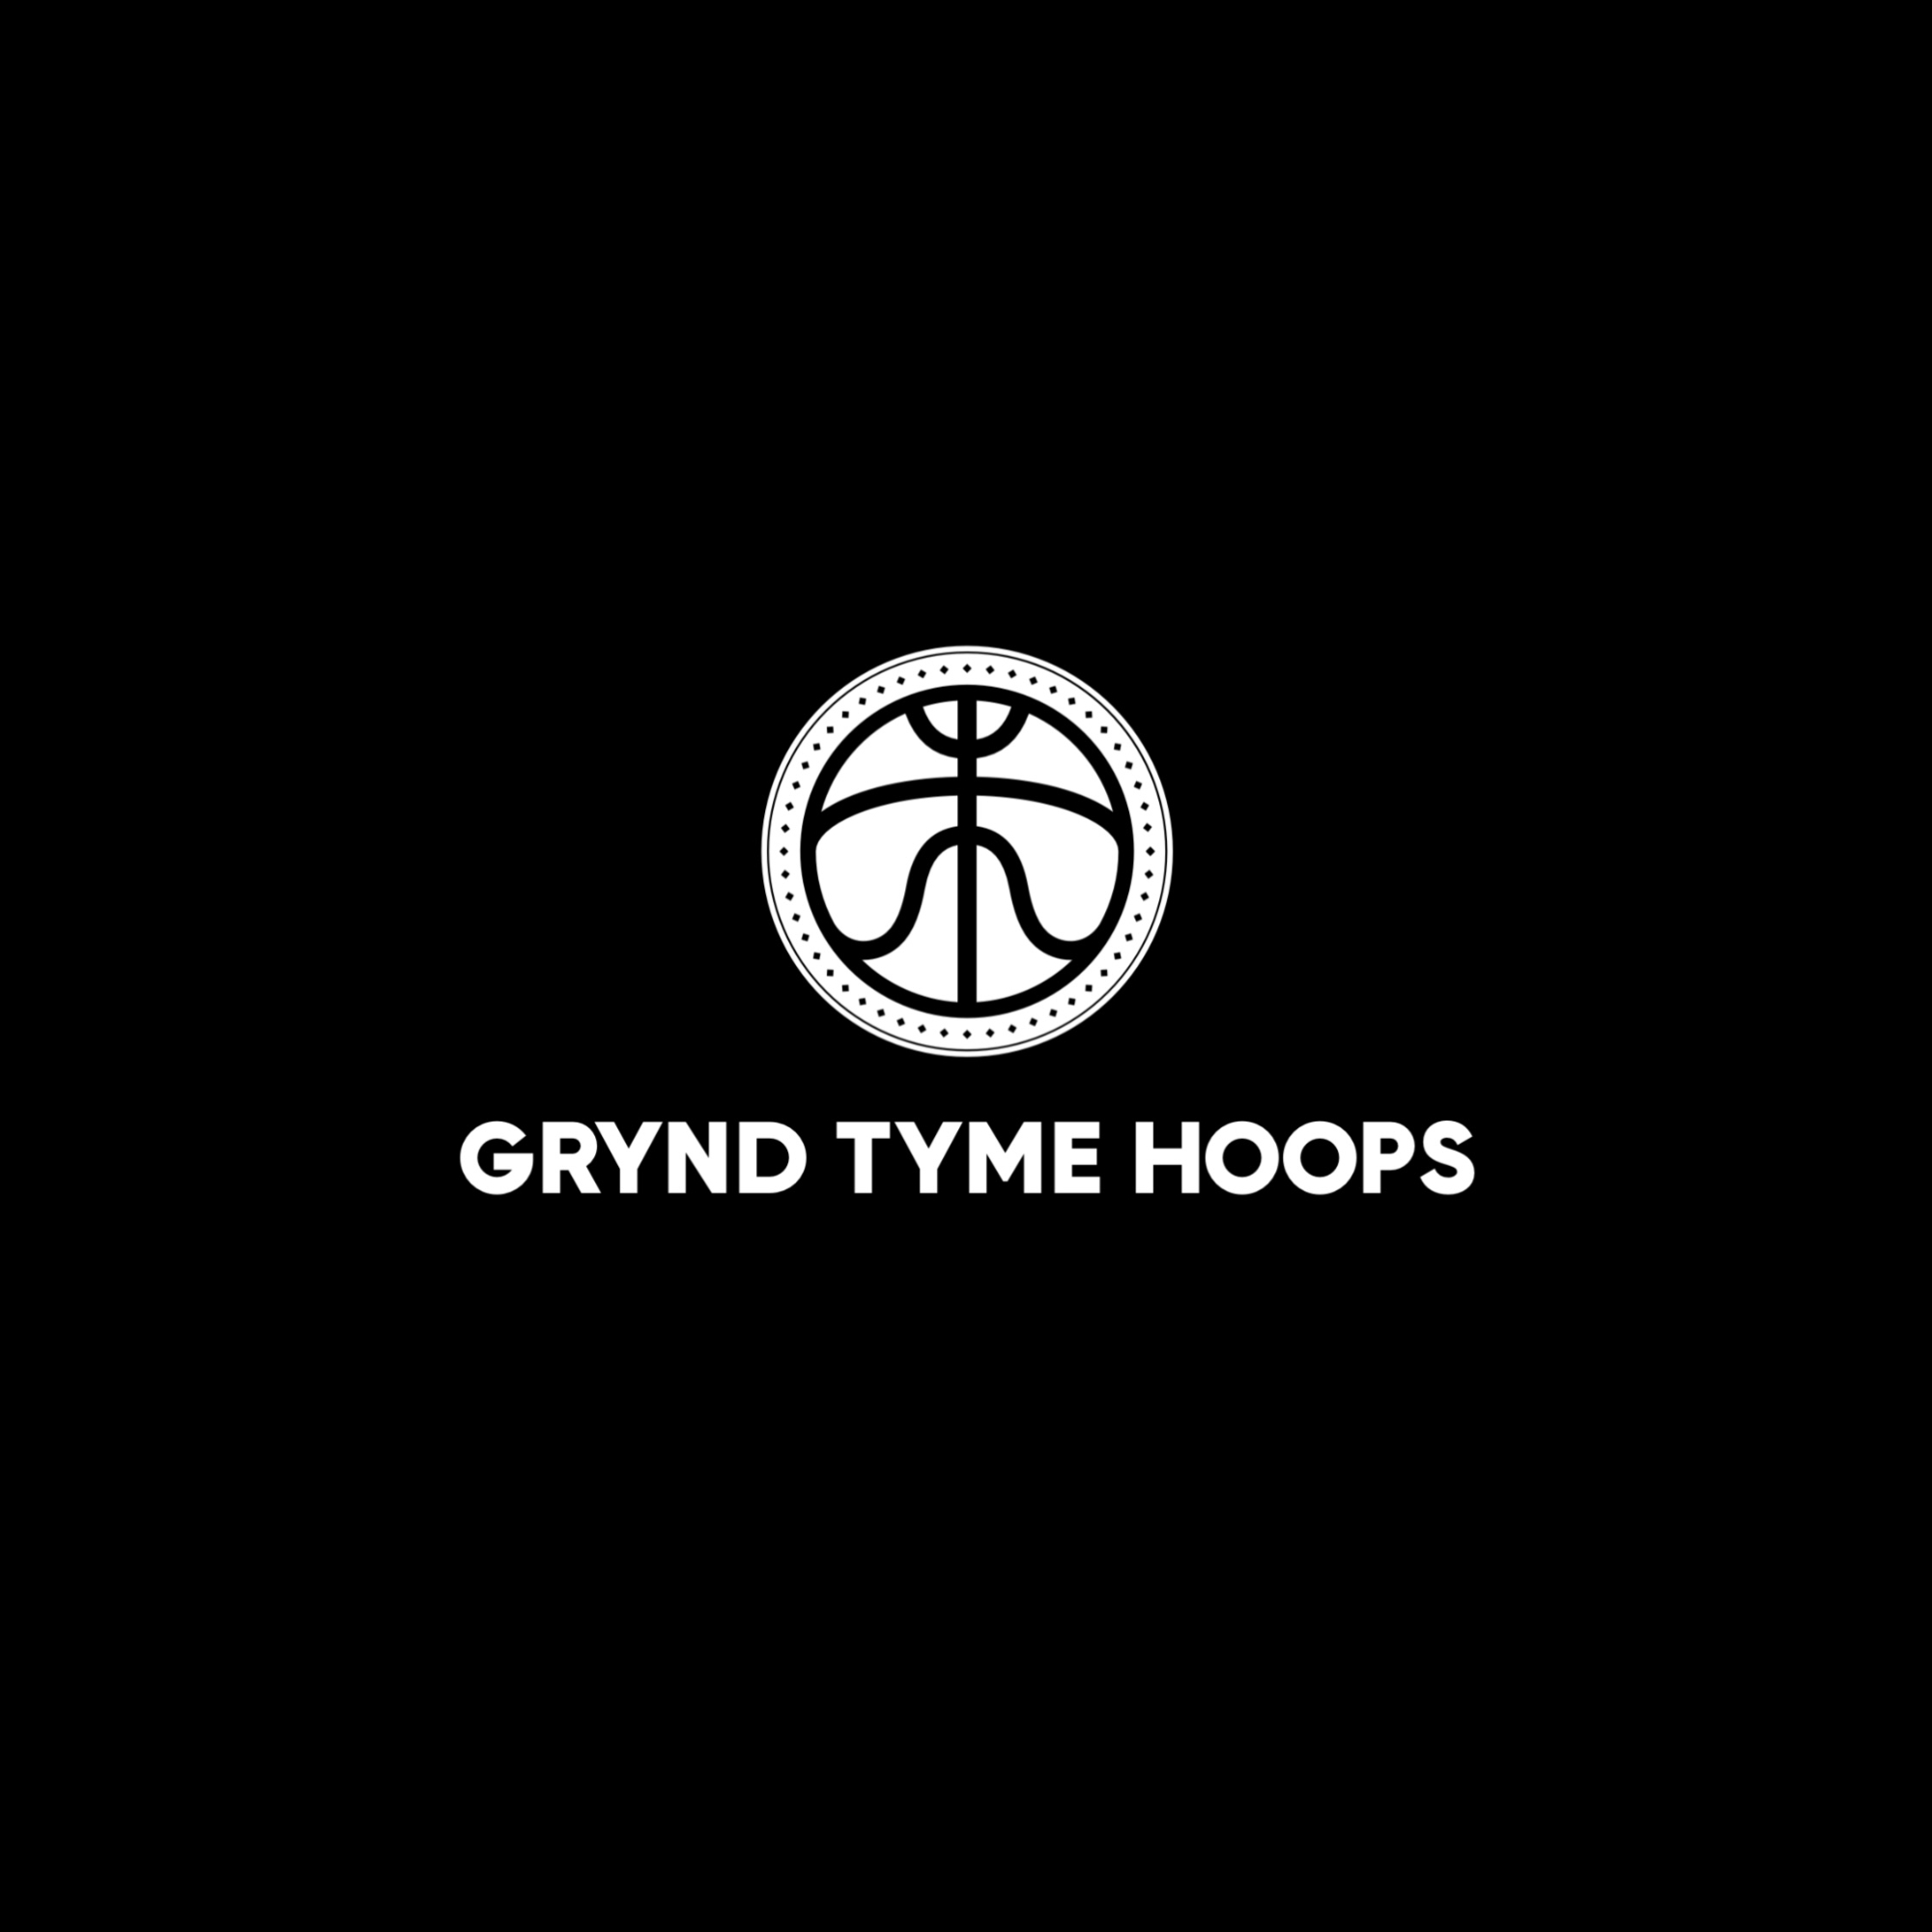 Organization logo for Grynd Tyme Hoops